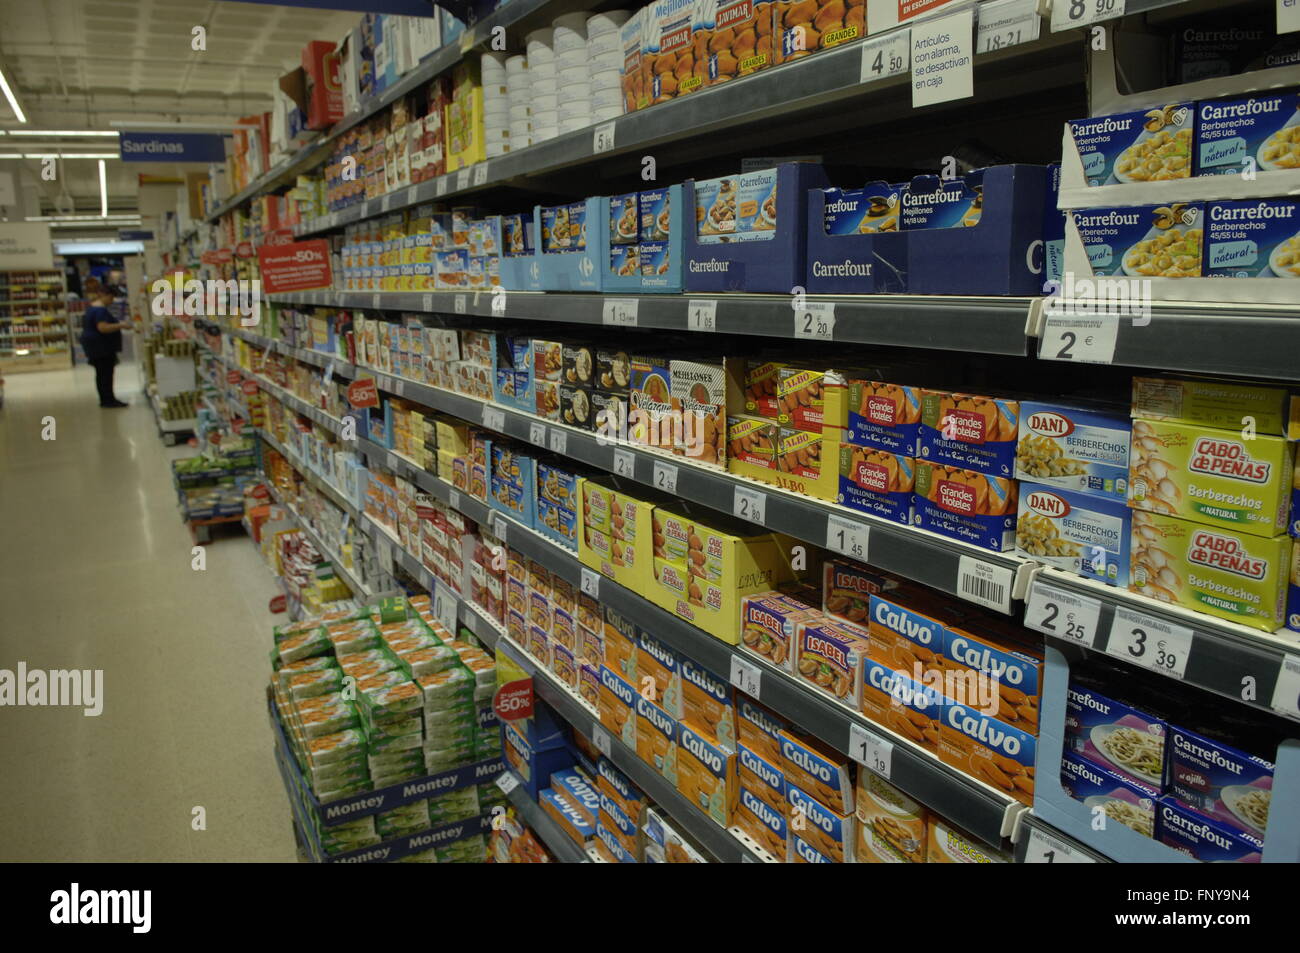 Supermercato Carrefour corsia alimentare visualizzazione prodotti a Malaga Spagna. Foto Stock